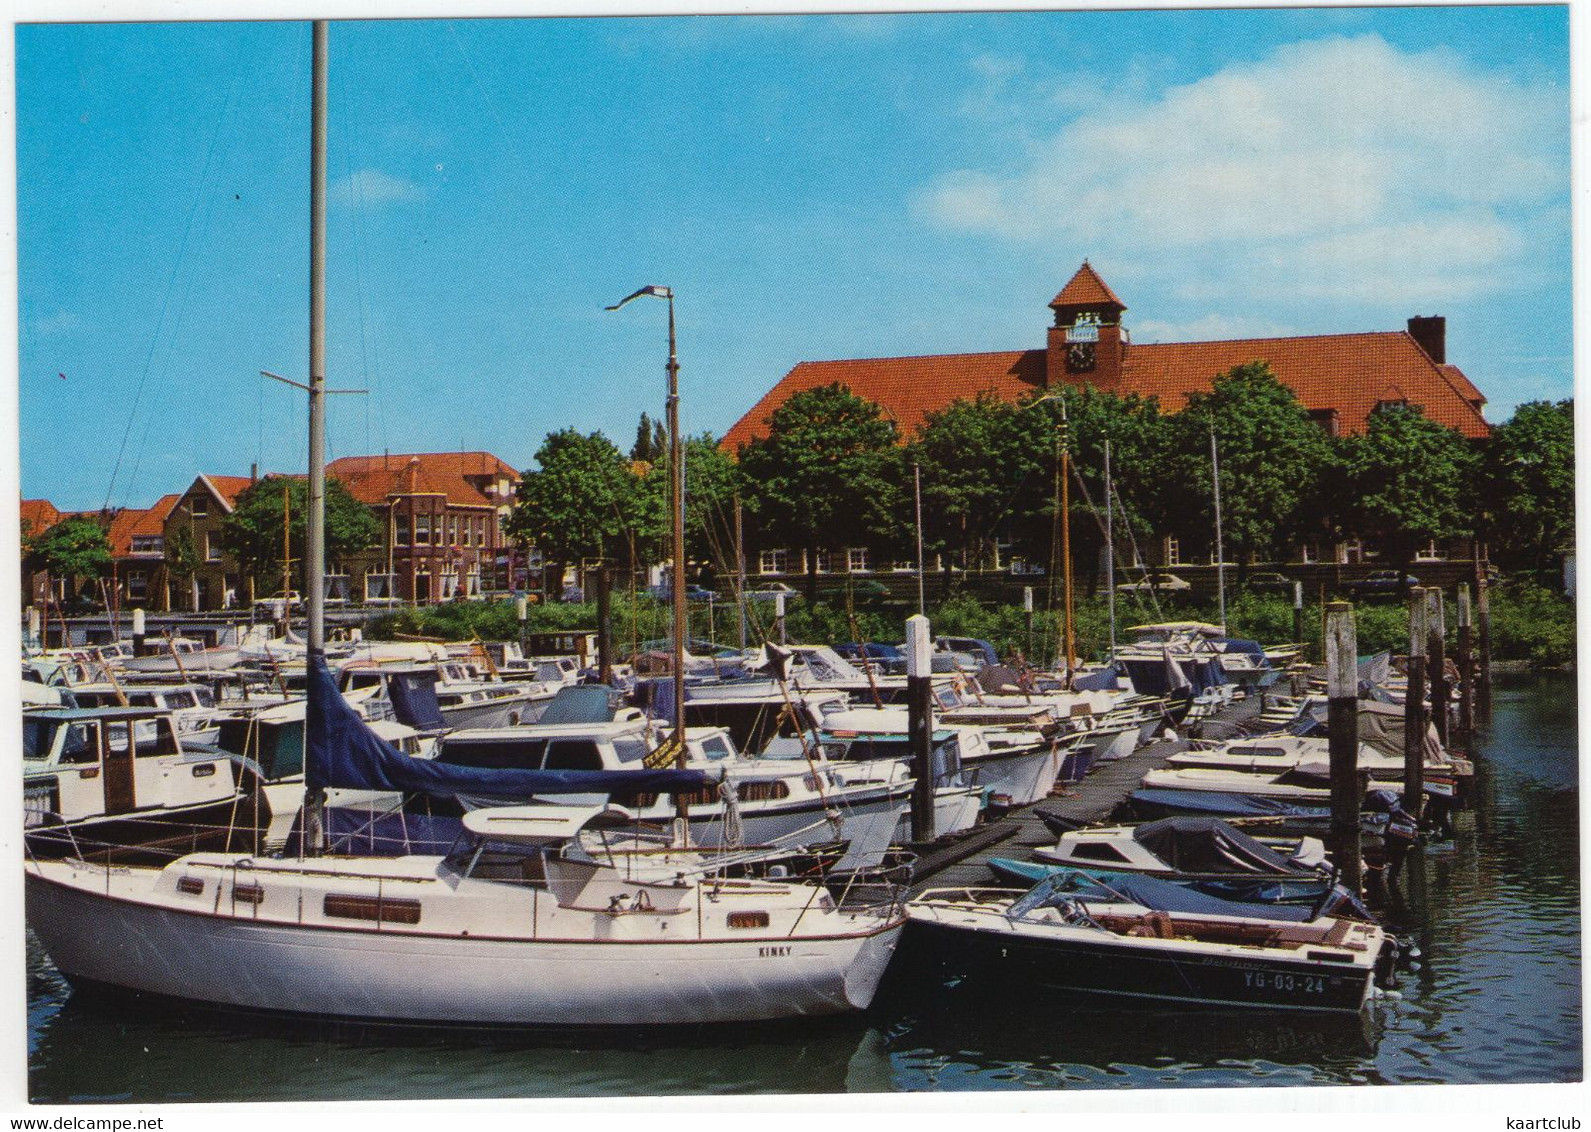 Sliedrecht - Jachthaven - (Zuid-Holland/Nederland) - Nr. SLT 2 - Jacht/Yacht - Sliedrecht